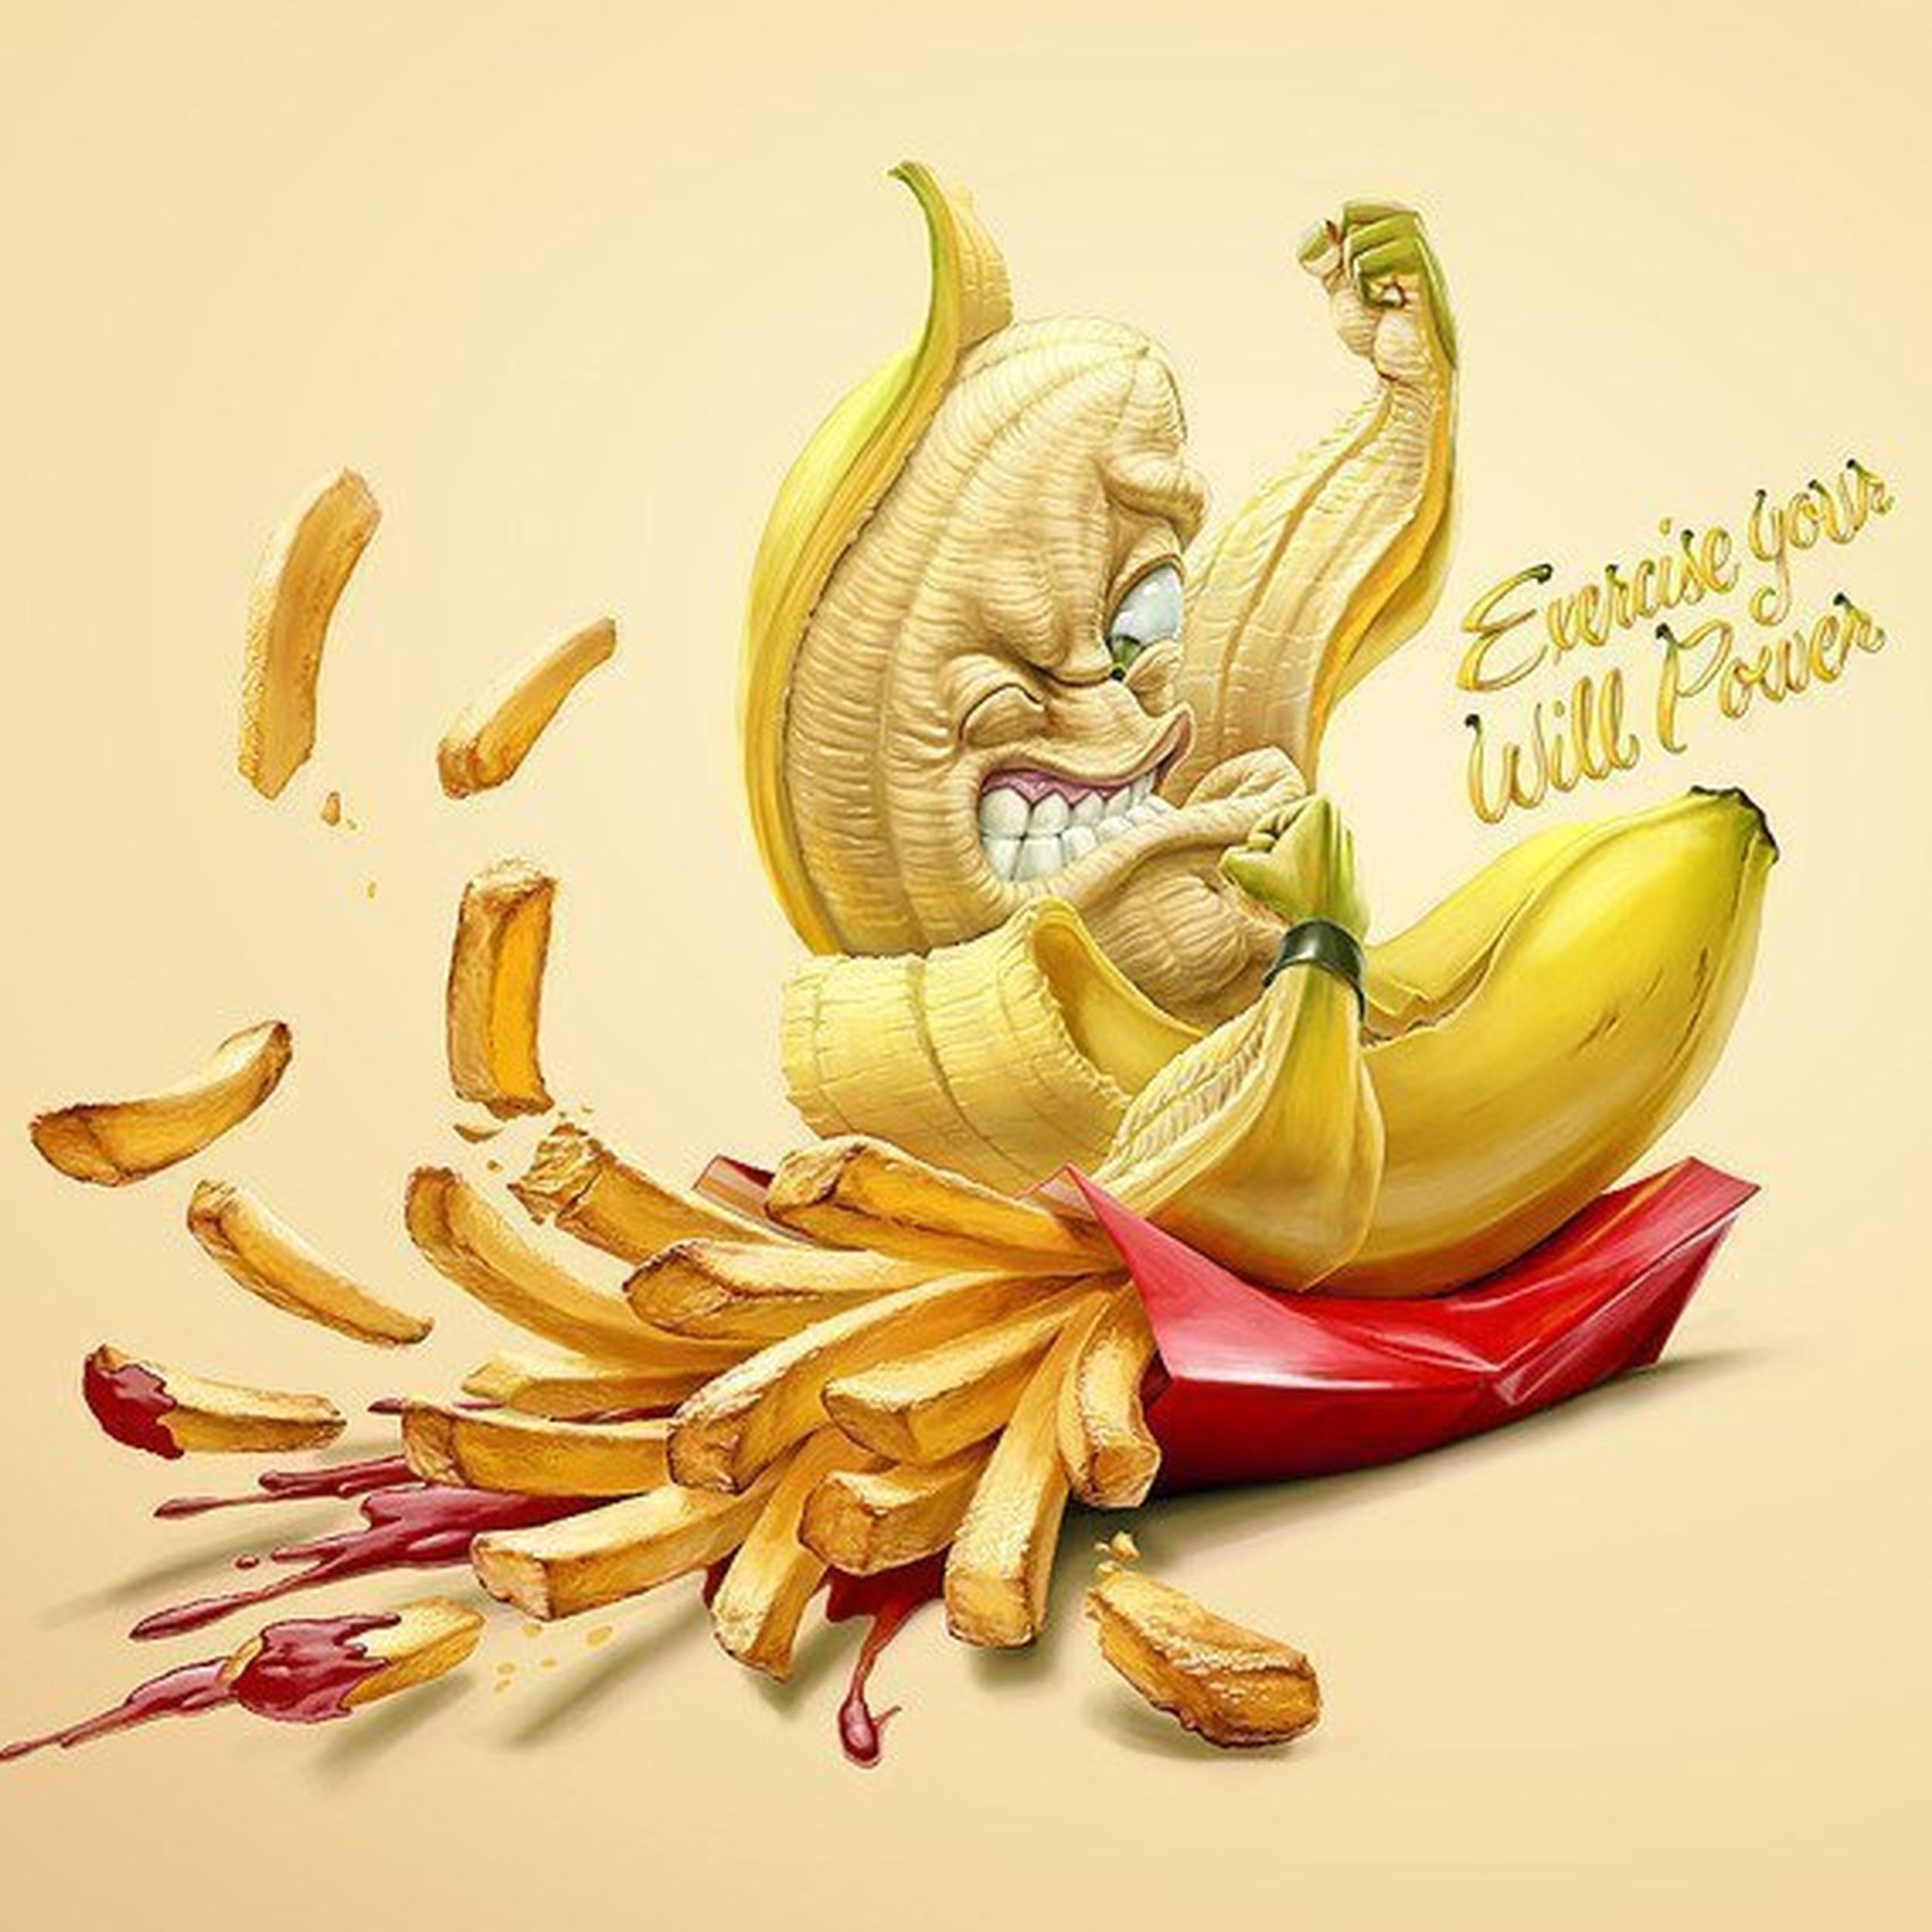 Образ жизни смешно. Оскар Рамос иллюстратор. Креативная реклама здорового питания. Смешной банан. Стилизованный банан.